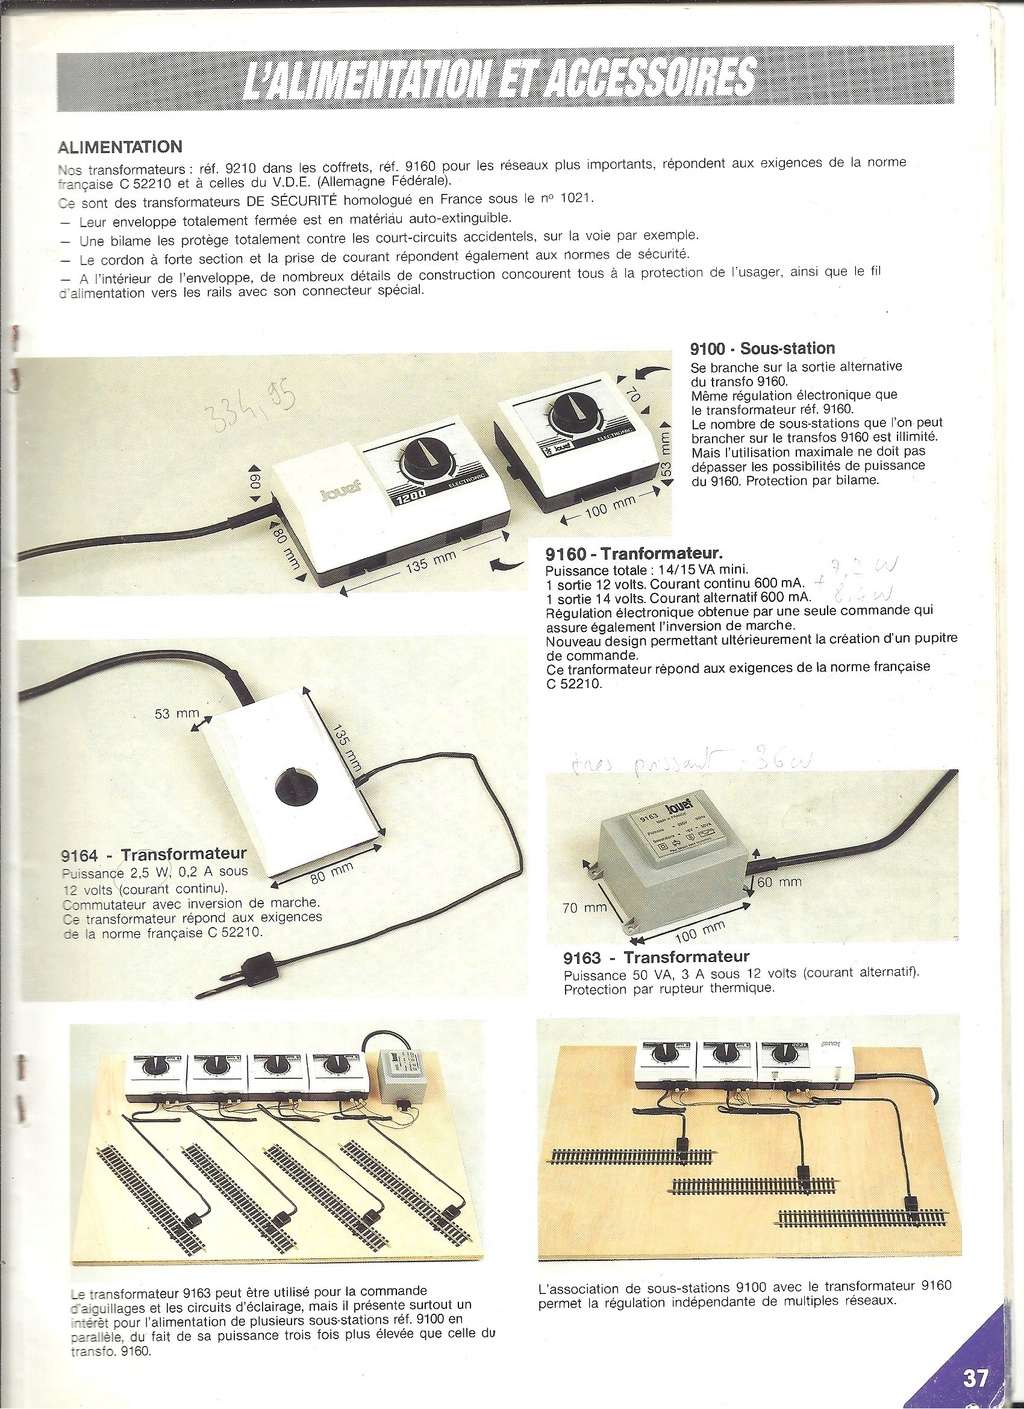 [JOUEF 1989] Catalogue 1989 Jouef250